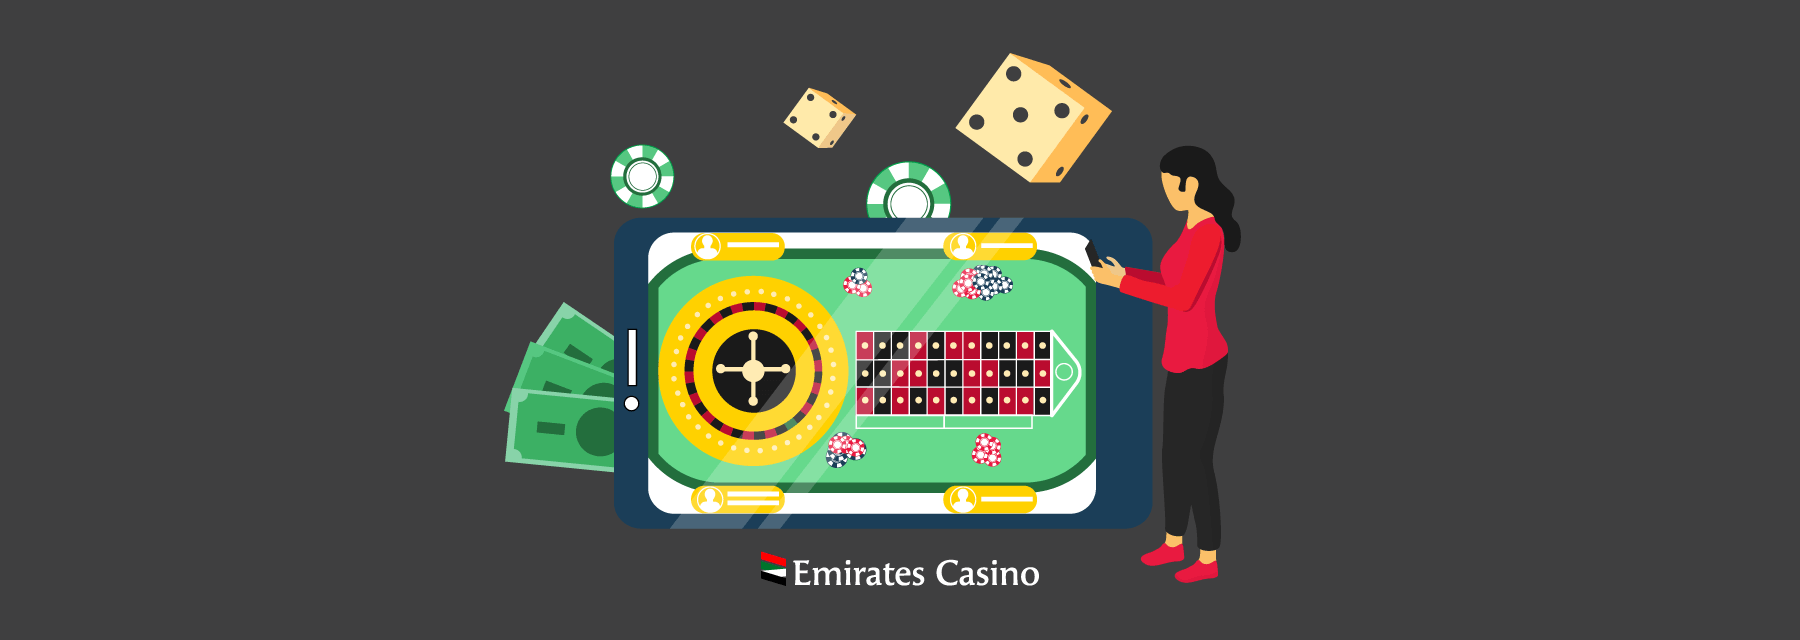 Live Roulette Guide - Emirates Casino Roulette Guide